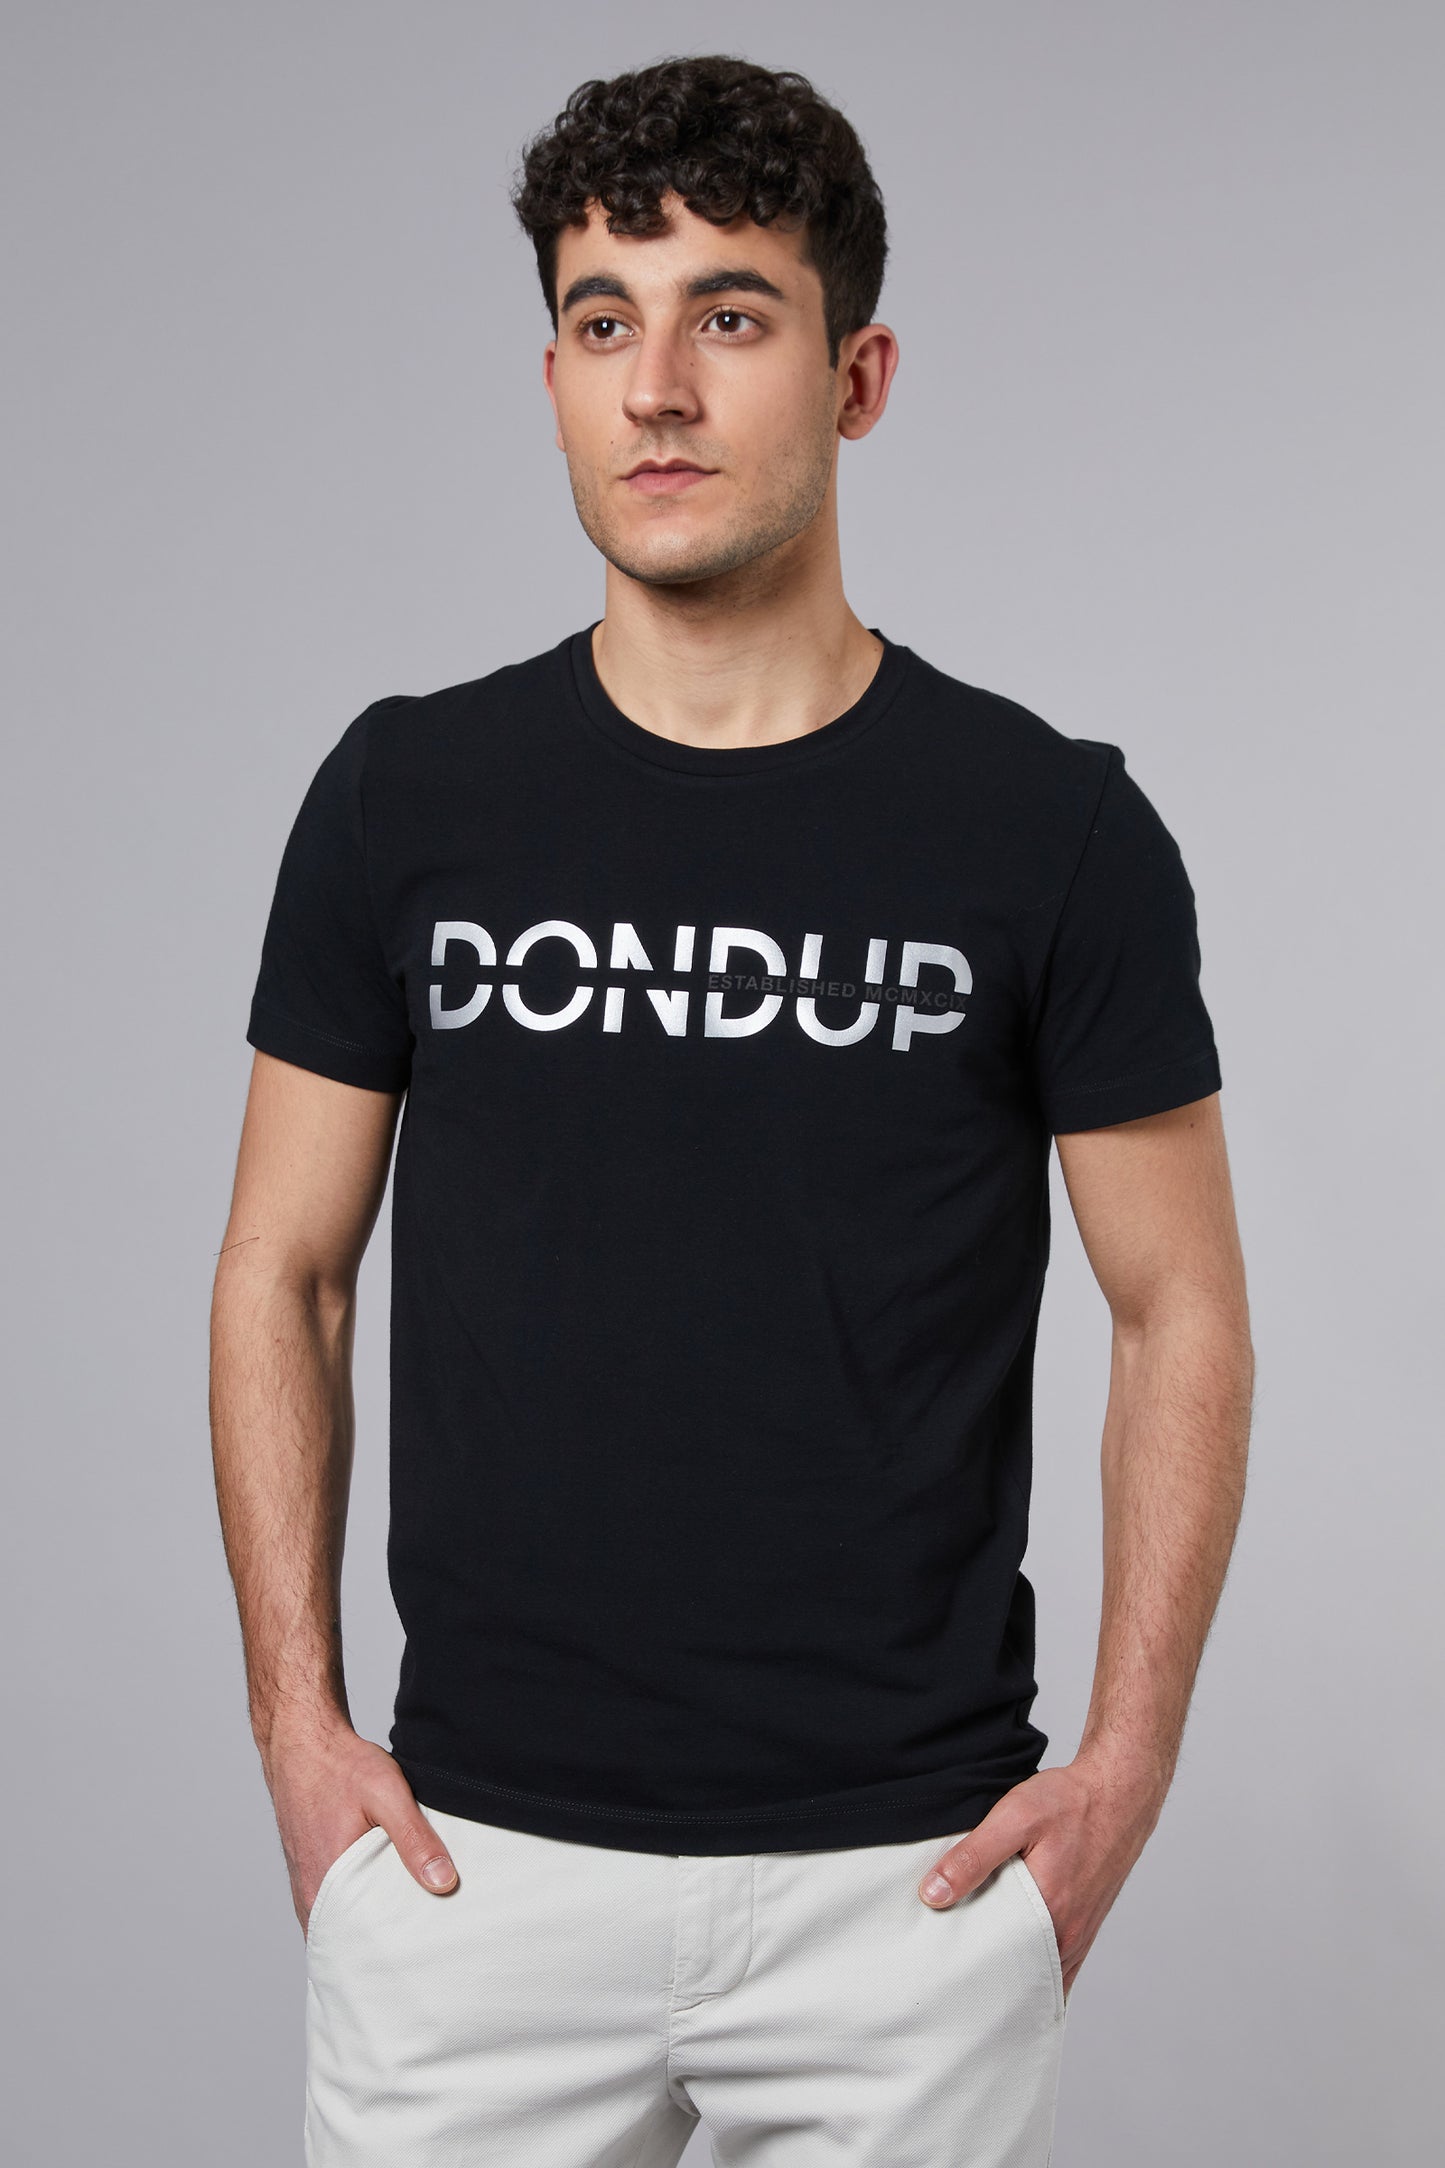  Dondup T-shirt Bianco Bianco Uomo - 1